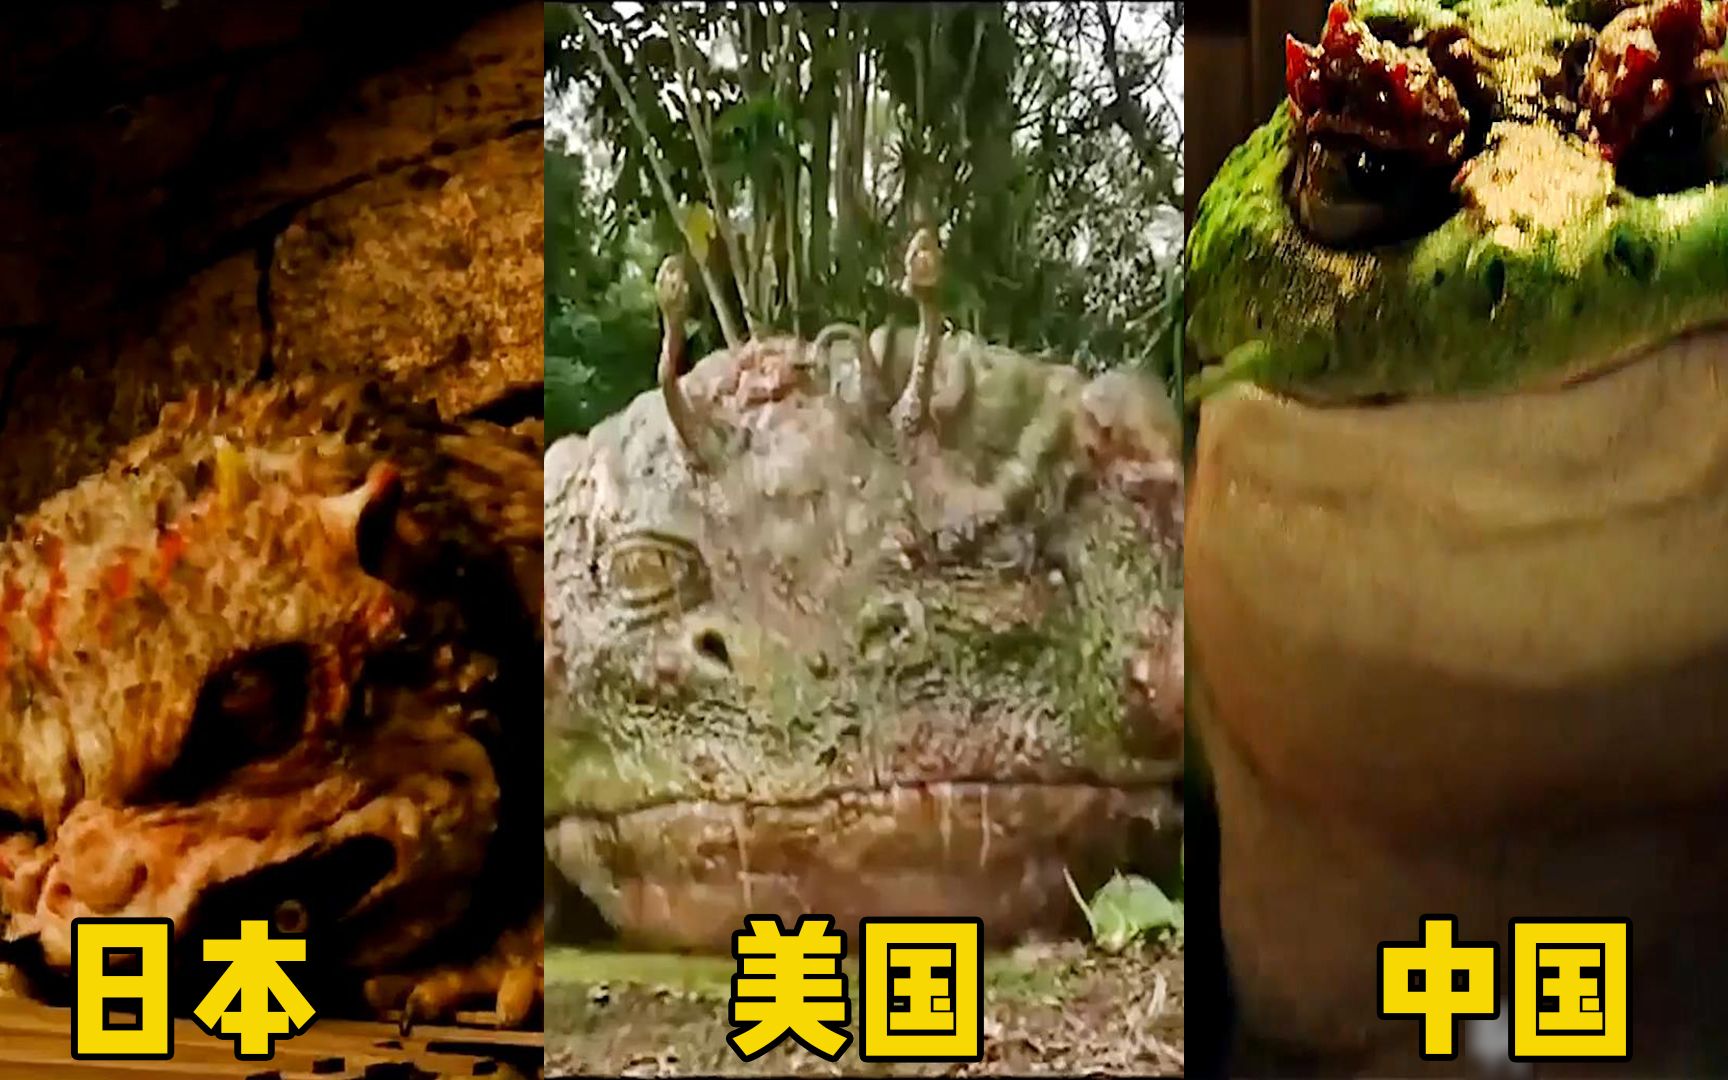 三部电影中的变异青蛙你觉得哪个国家的更厉害日本的有六条腿